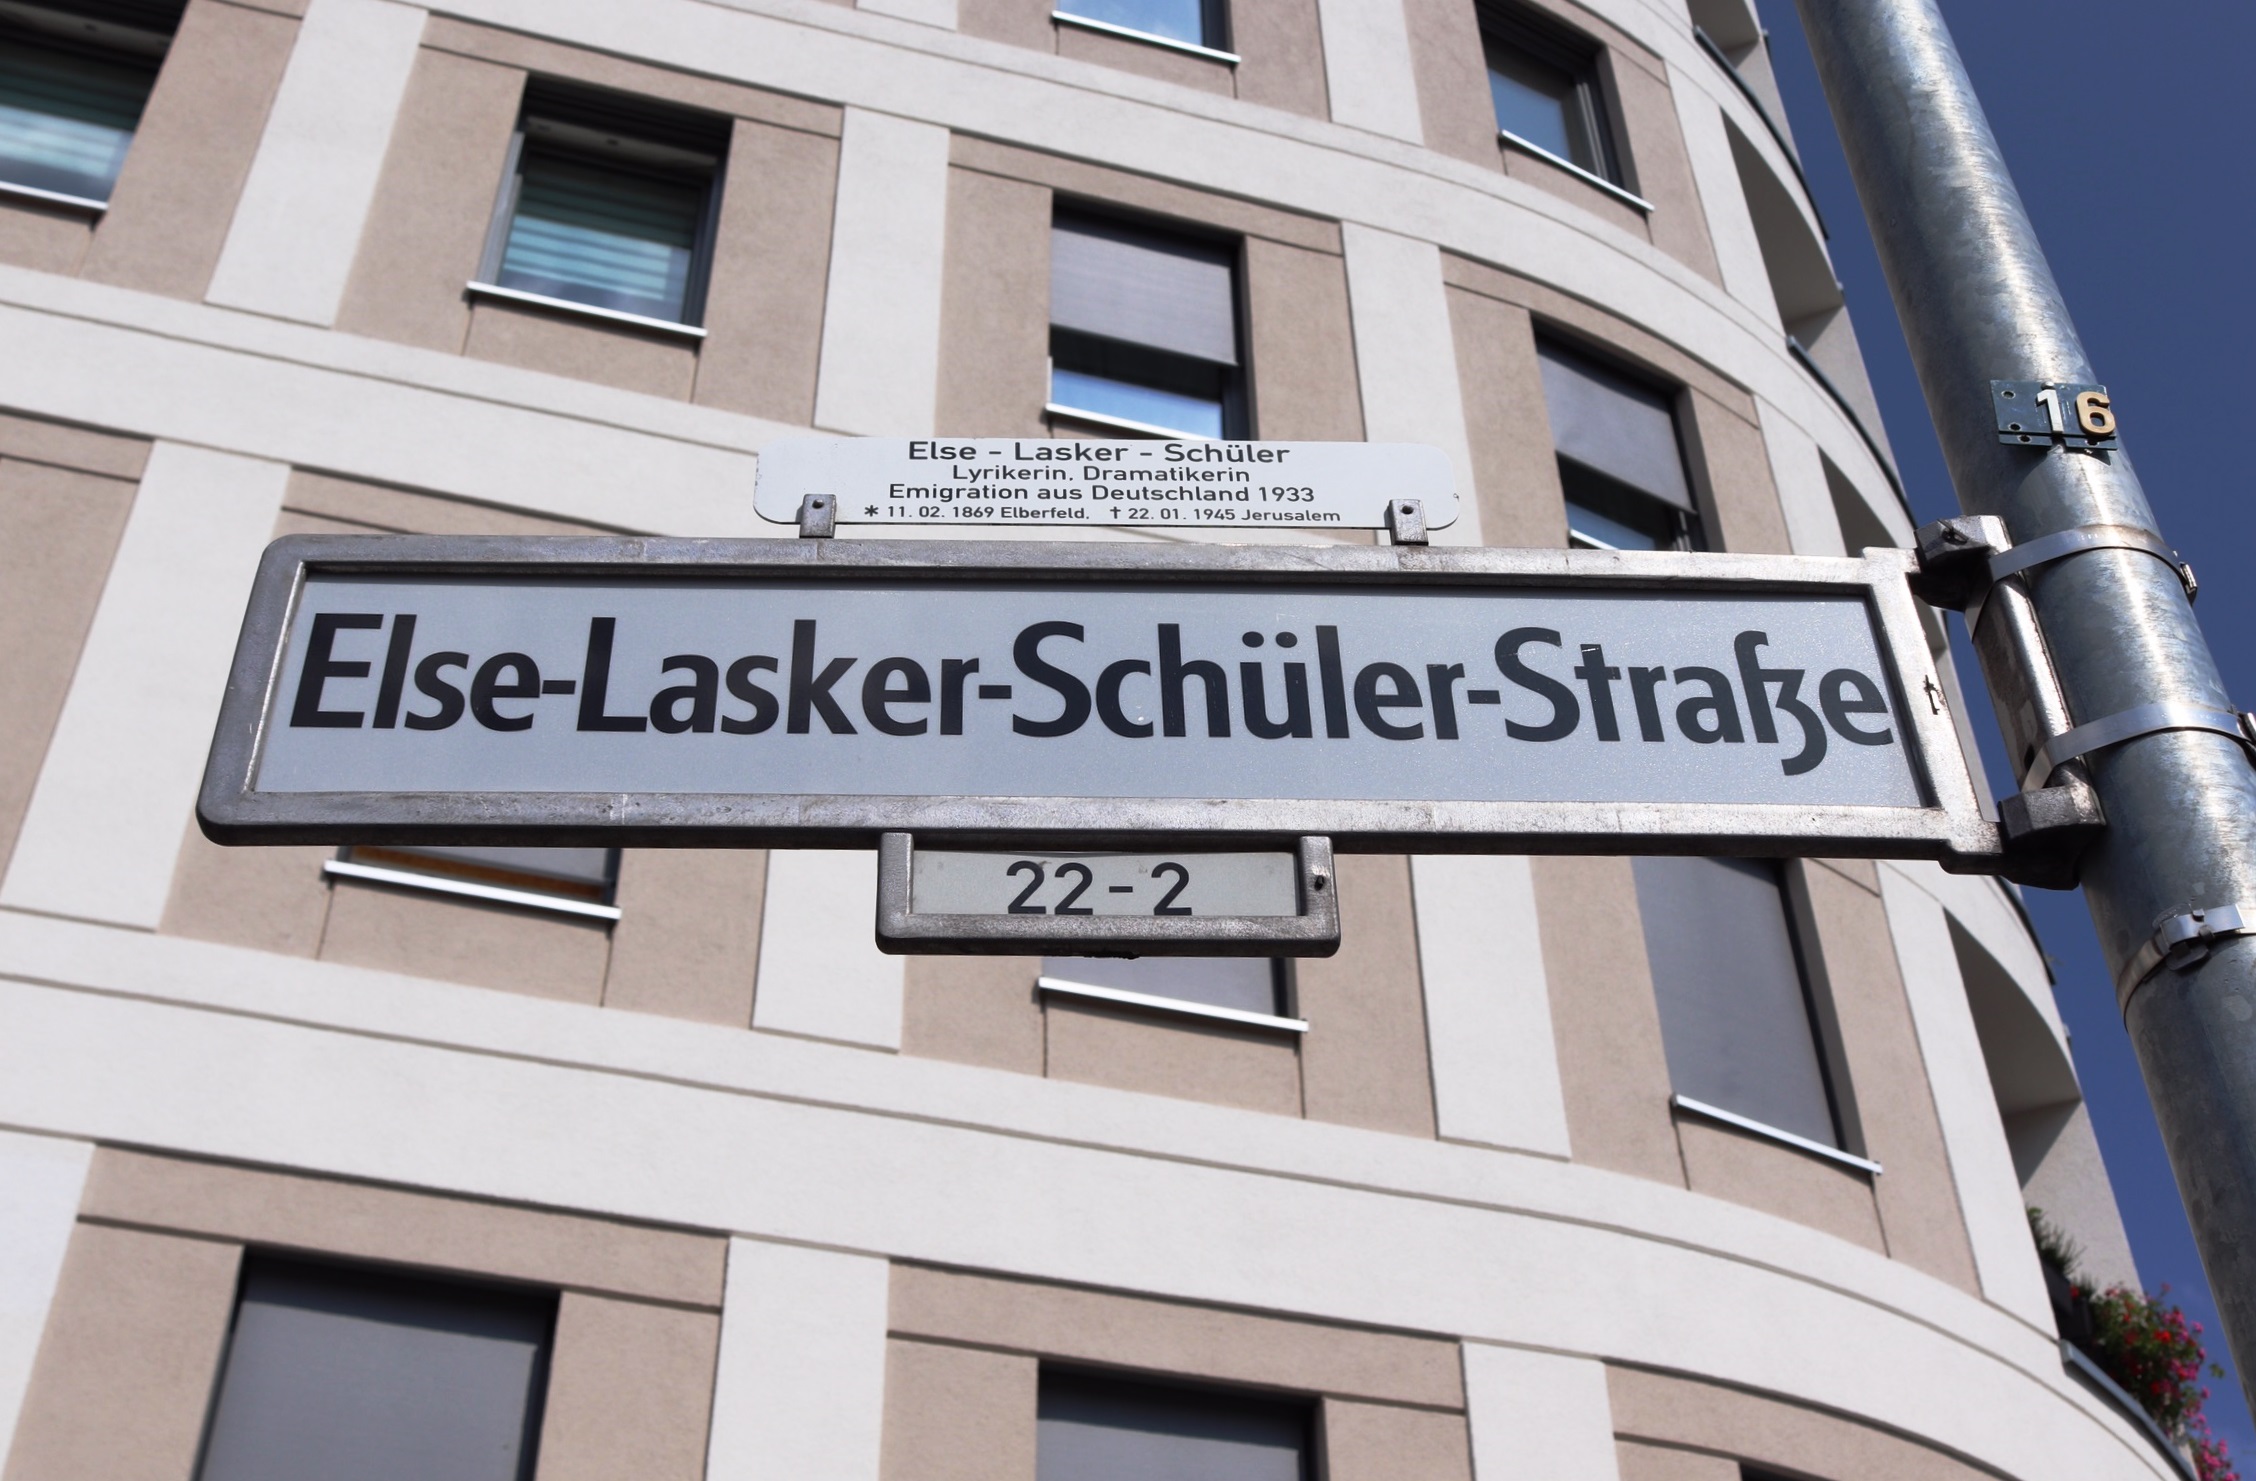 Else Lasker-Schüler-Strasse 1.jpeg